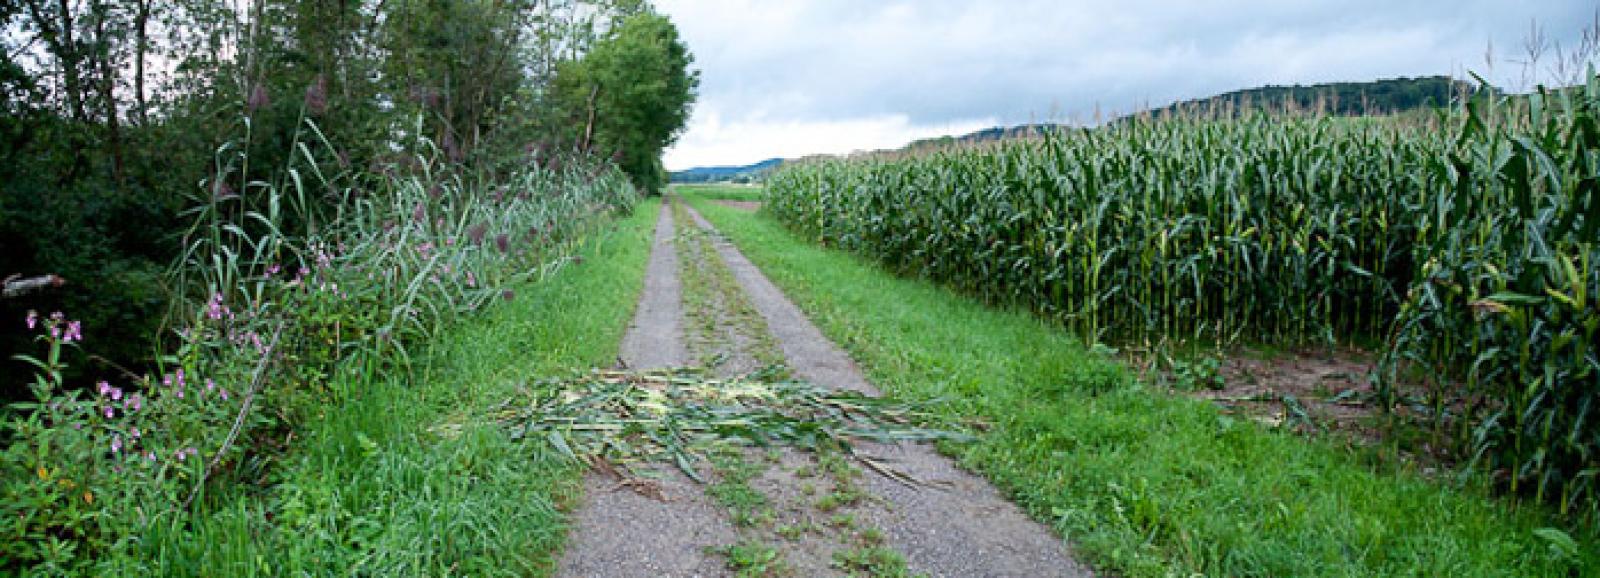 Passage du cours d’eau vers un champ de maïs (© Christof Angst)